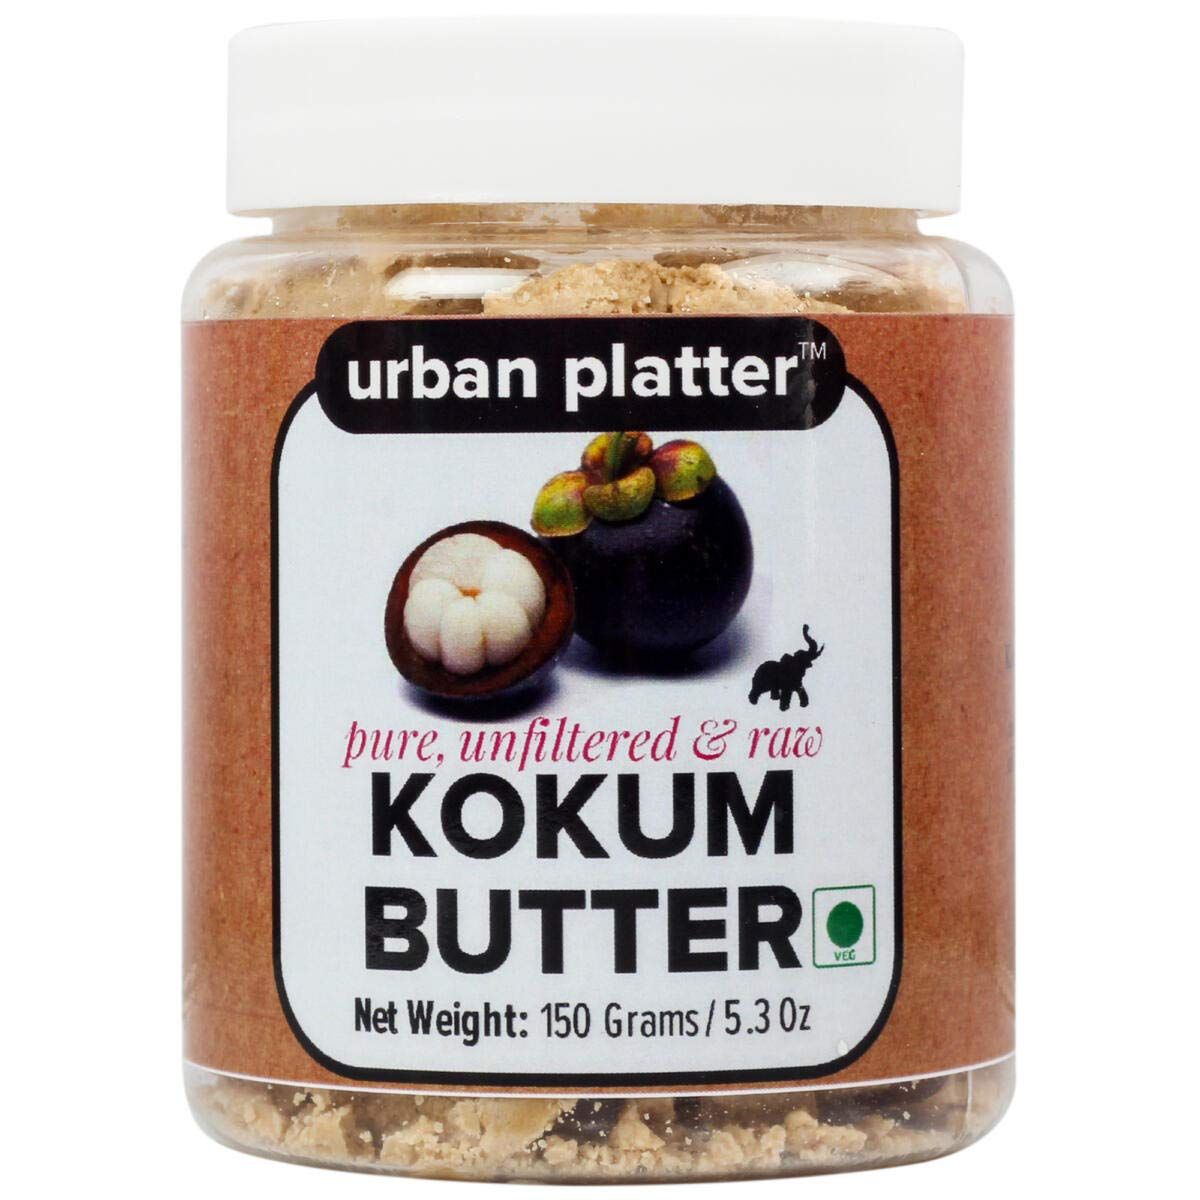 Urban Platter Kokum Butter Image